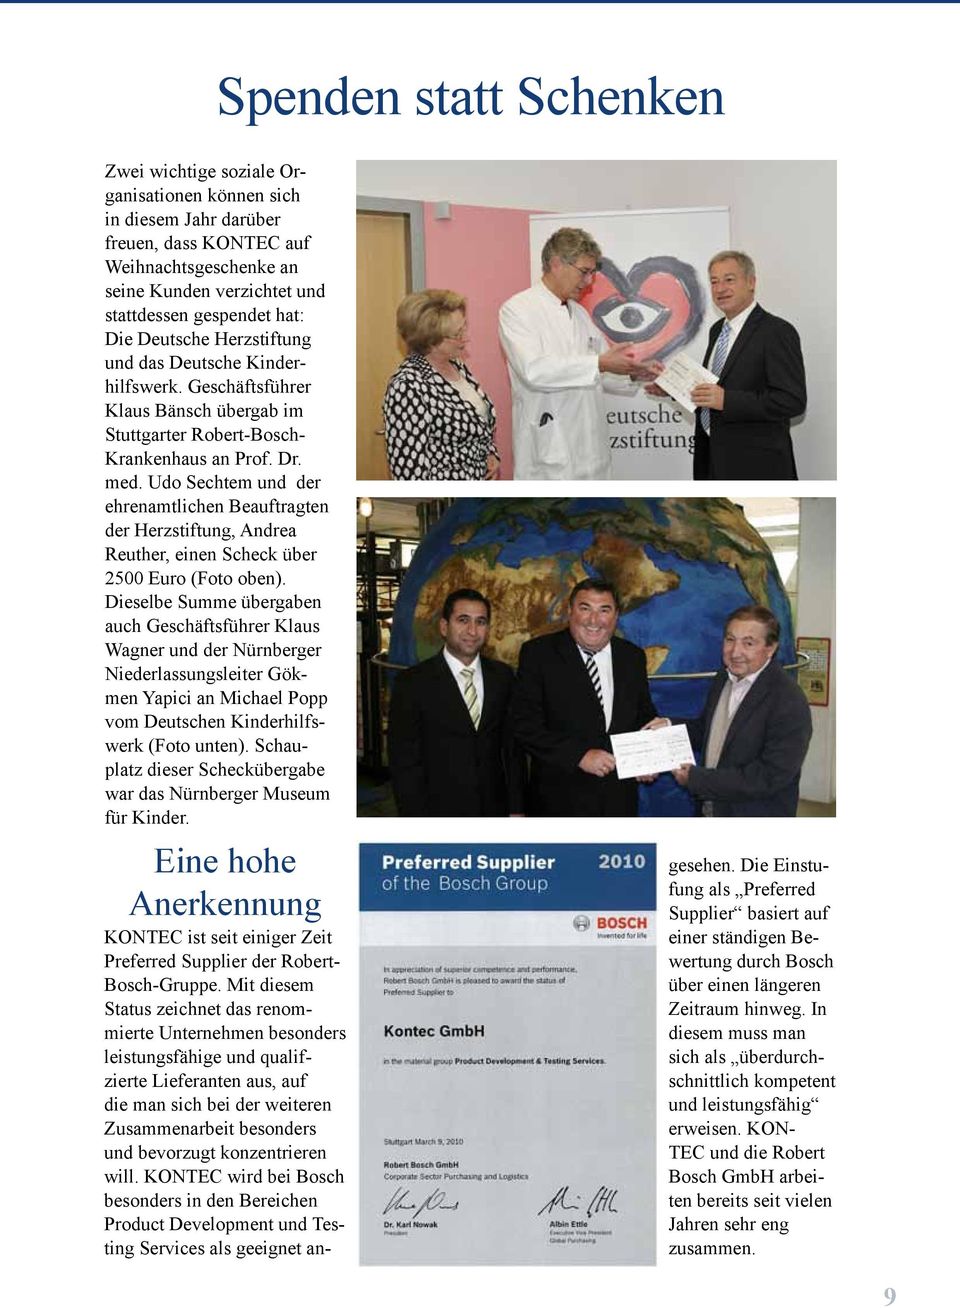 Udo Sechtem und der ehrenamtlichen Beauftragten der Herzstiftung, Andrea Reuther, einen Scheck über 2500 Euro (Foto oben).